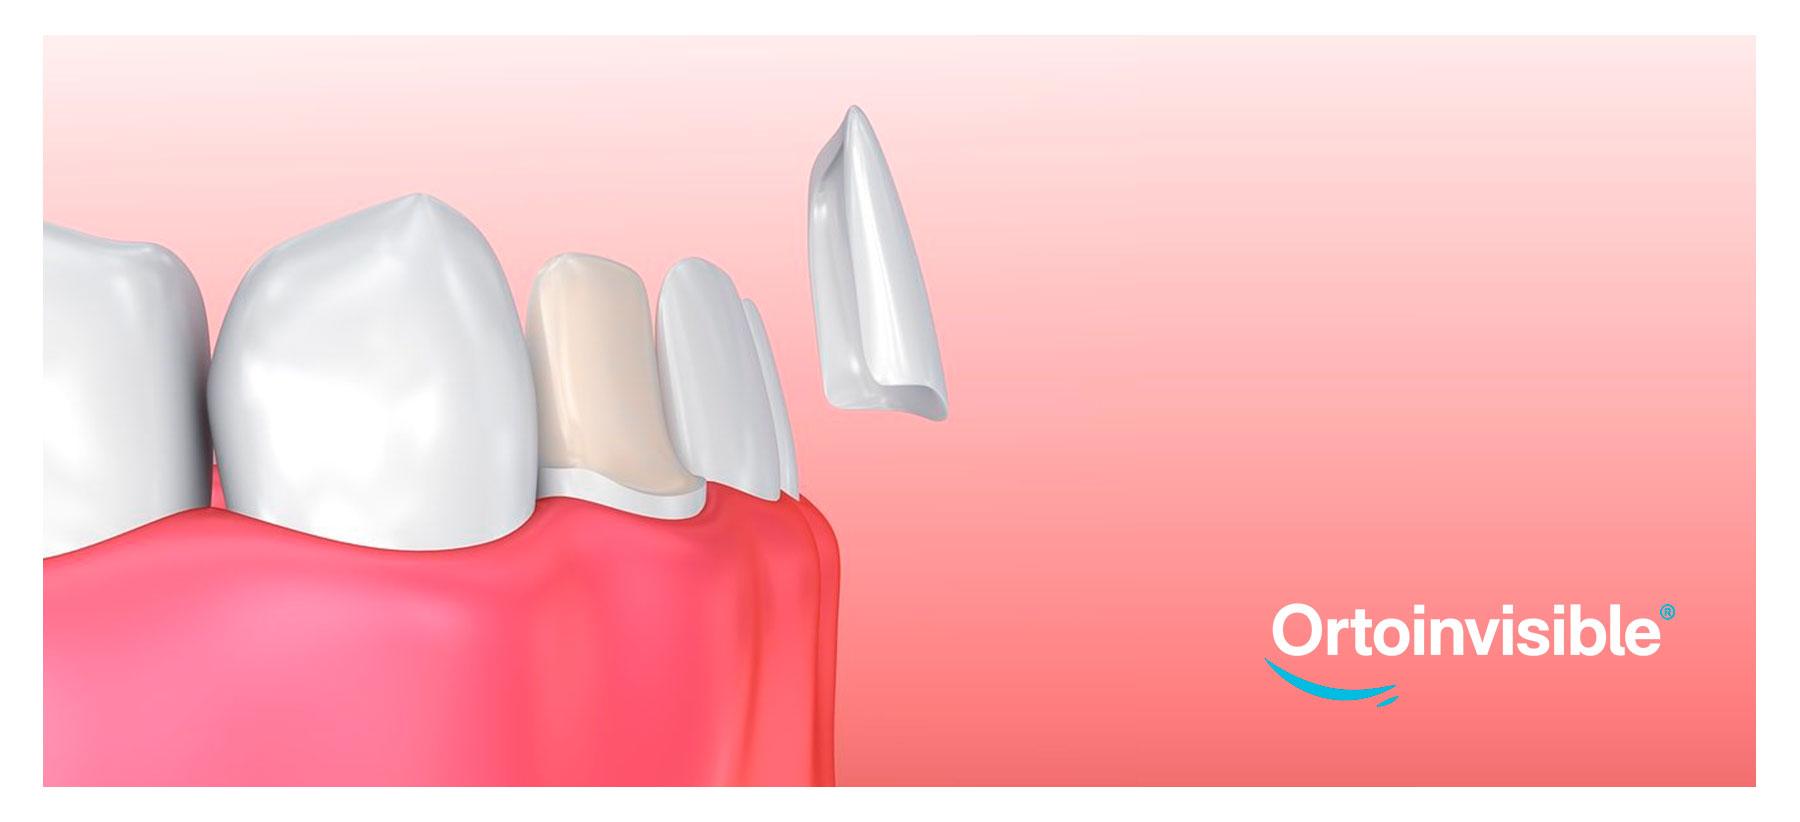 Tipos de carillas dentales y sus diferencias